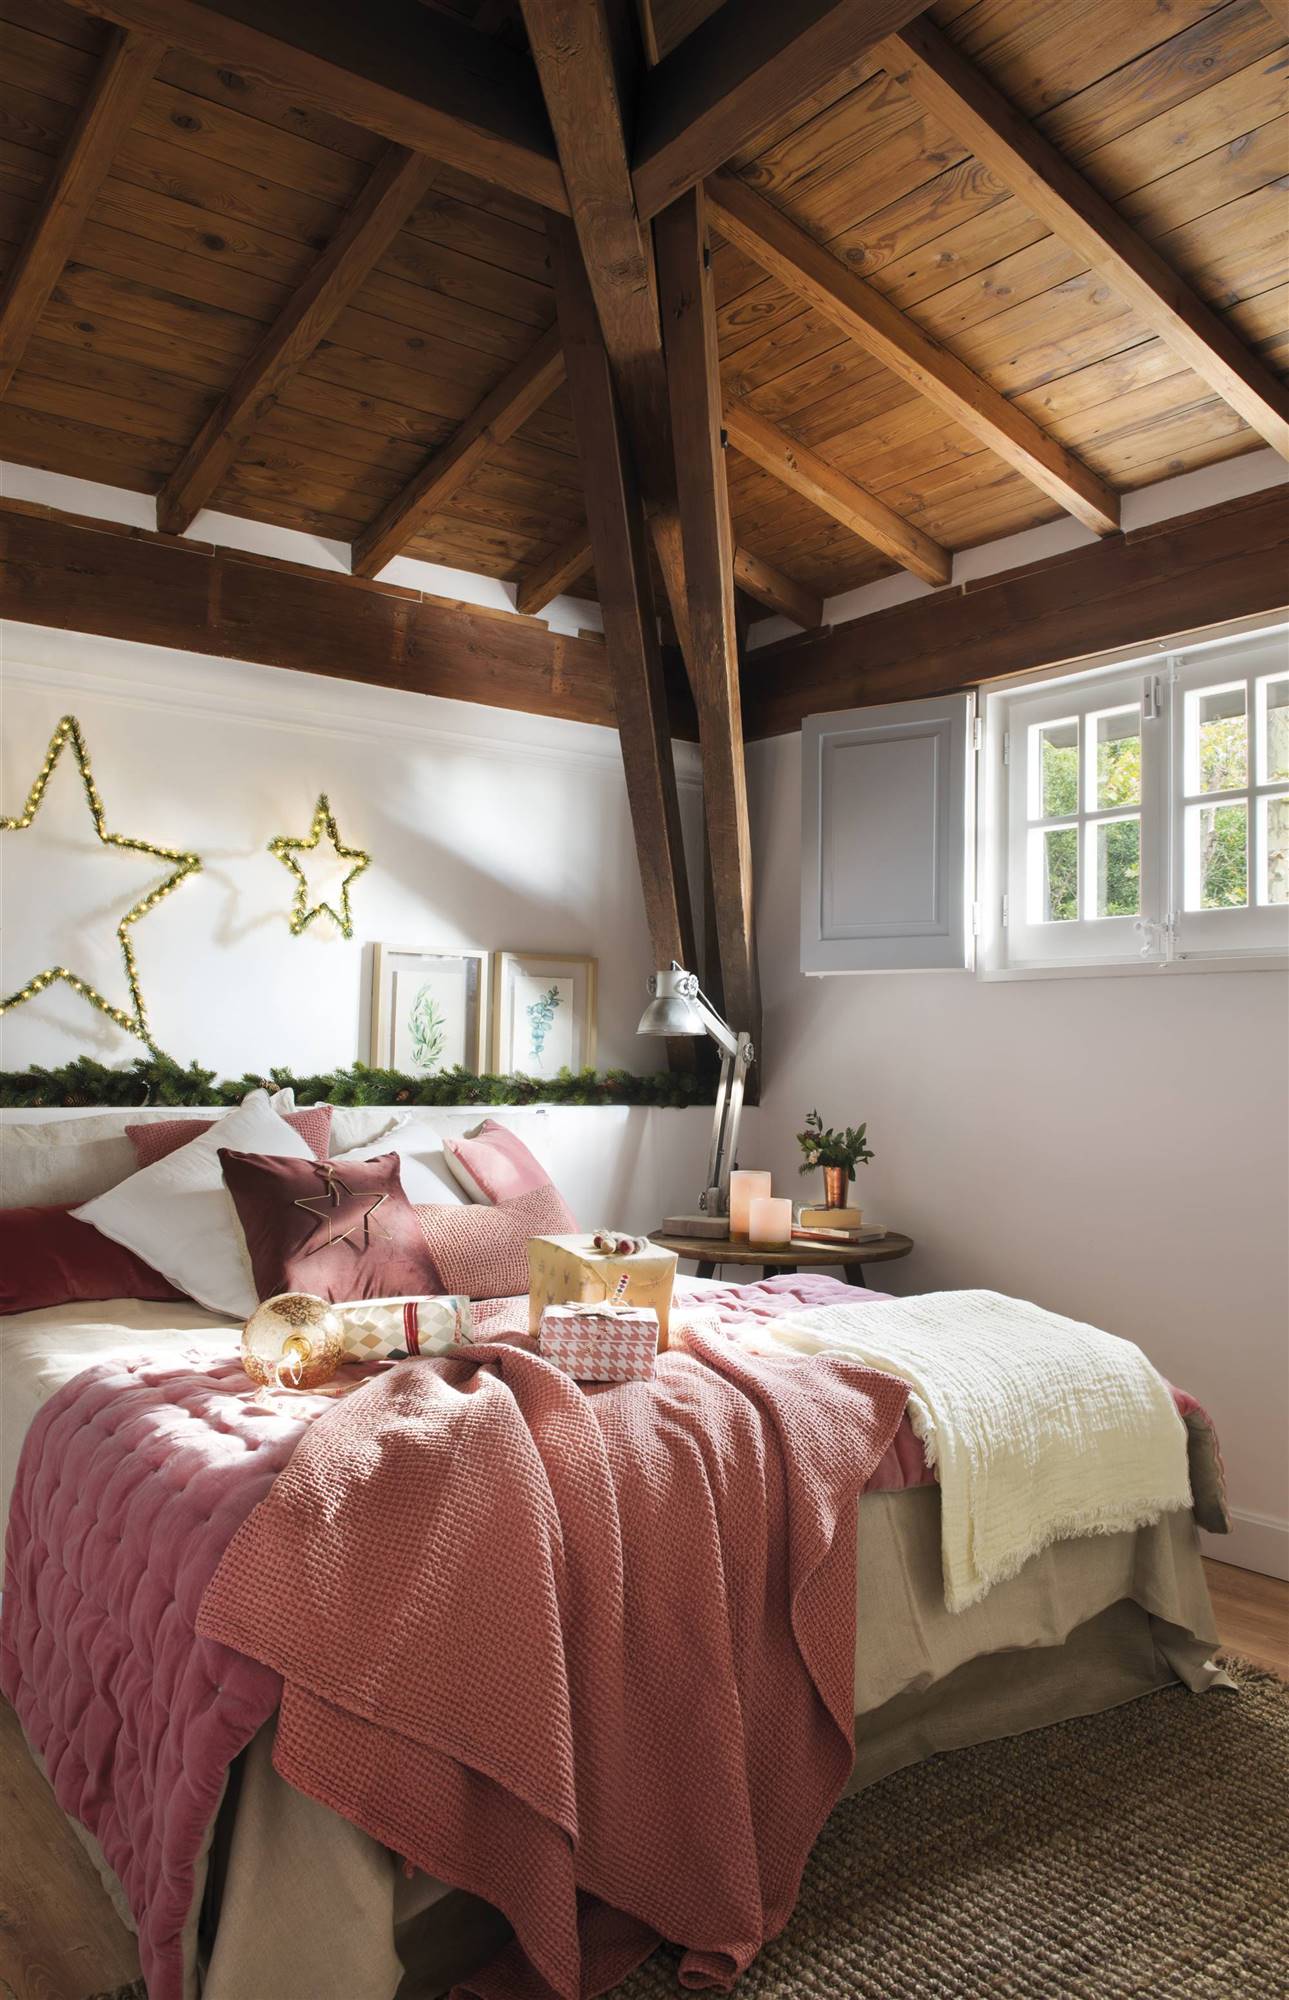 Dormitorio rústico con vigas de madera y cabecero a modo de murete